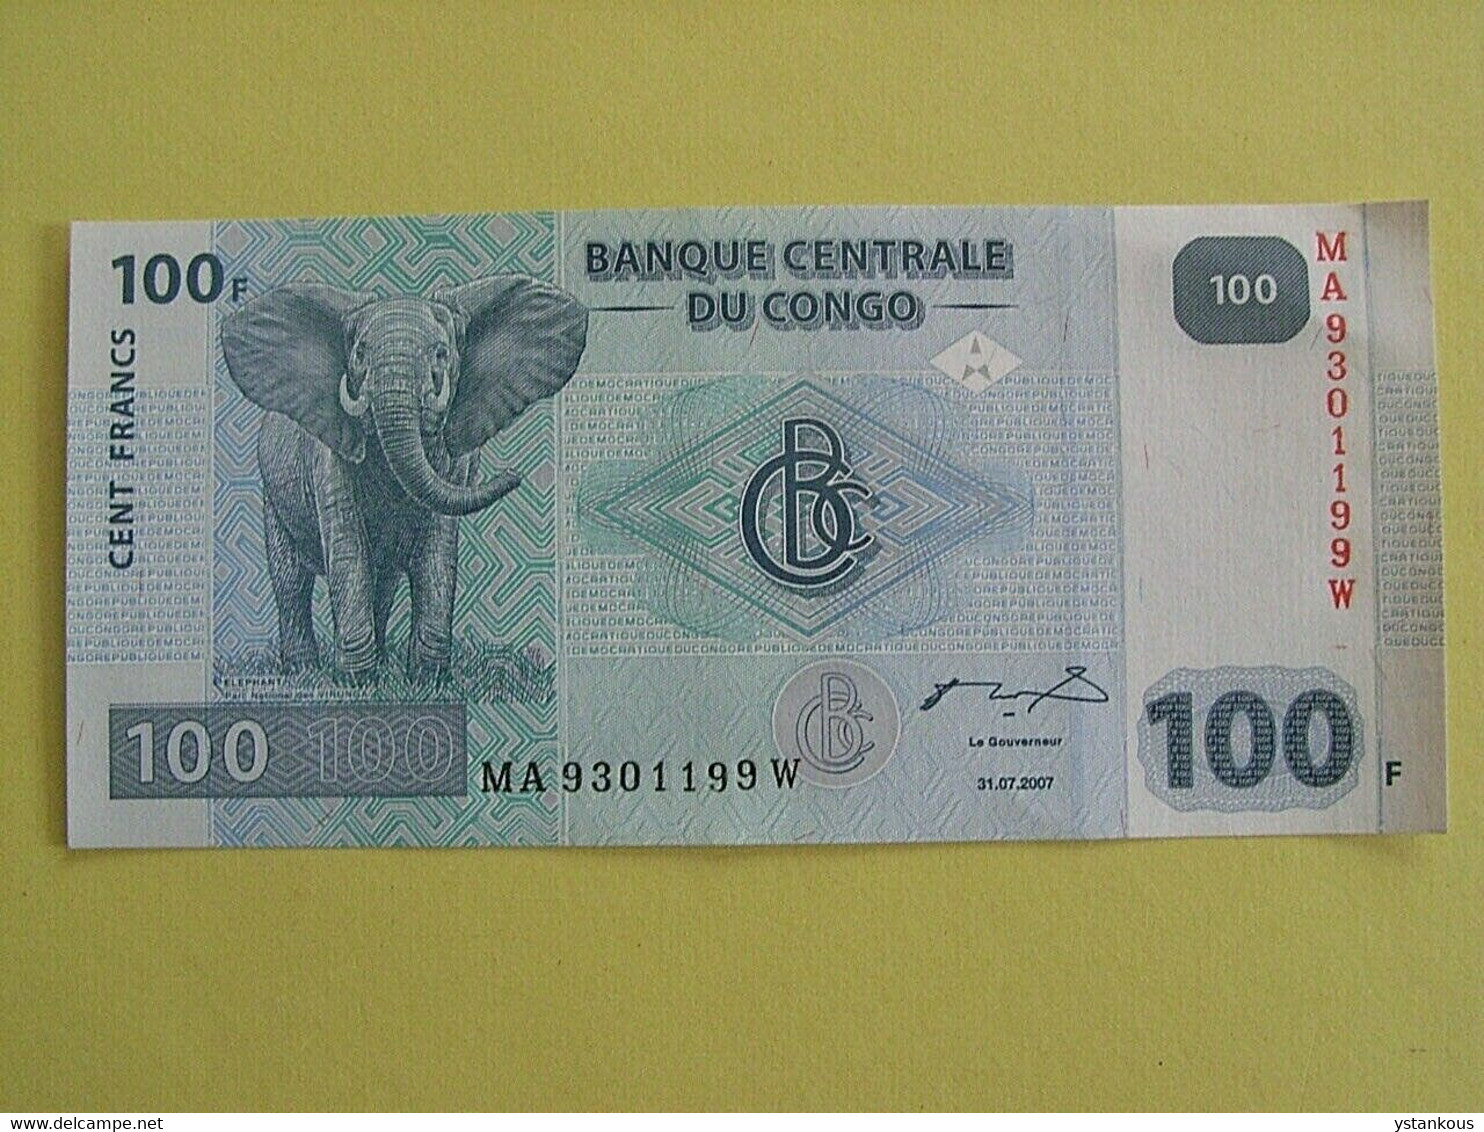 Billet De 100 Francs 2007 Banque Centrale Du Congo. - Zonder Classificatie